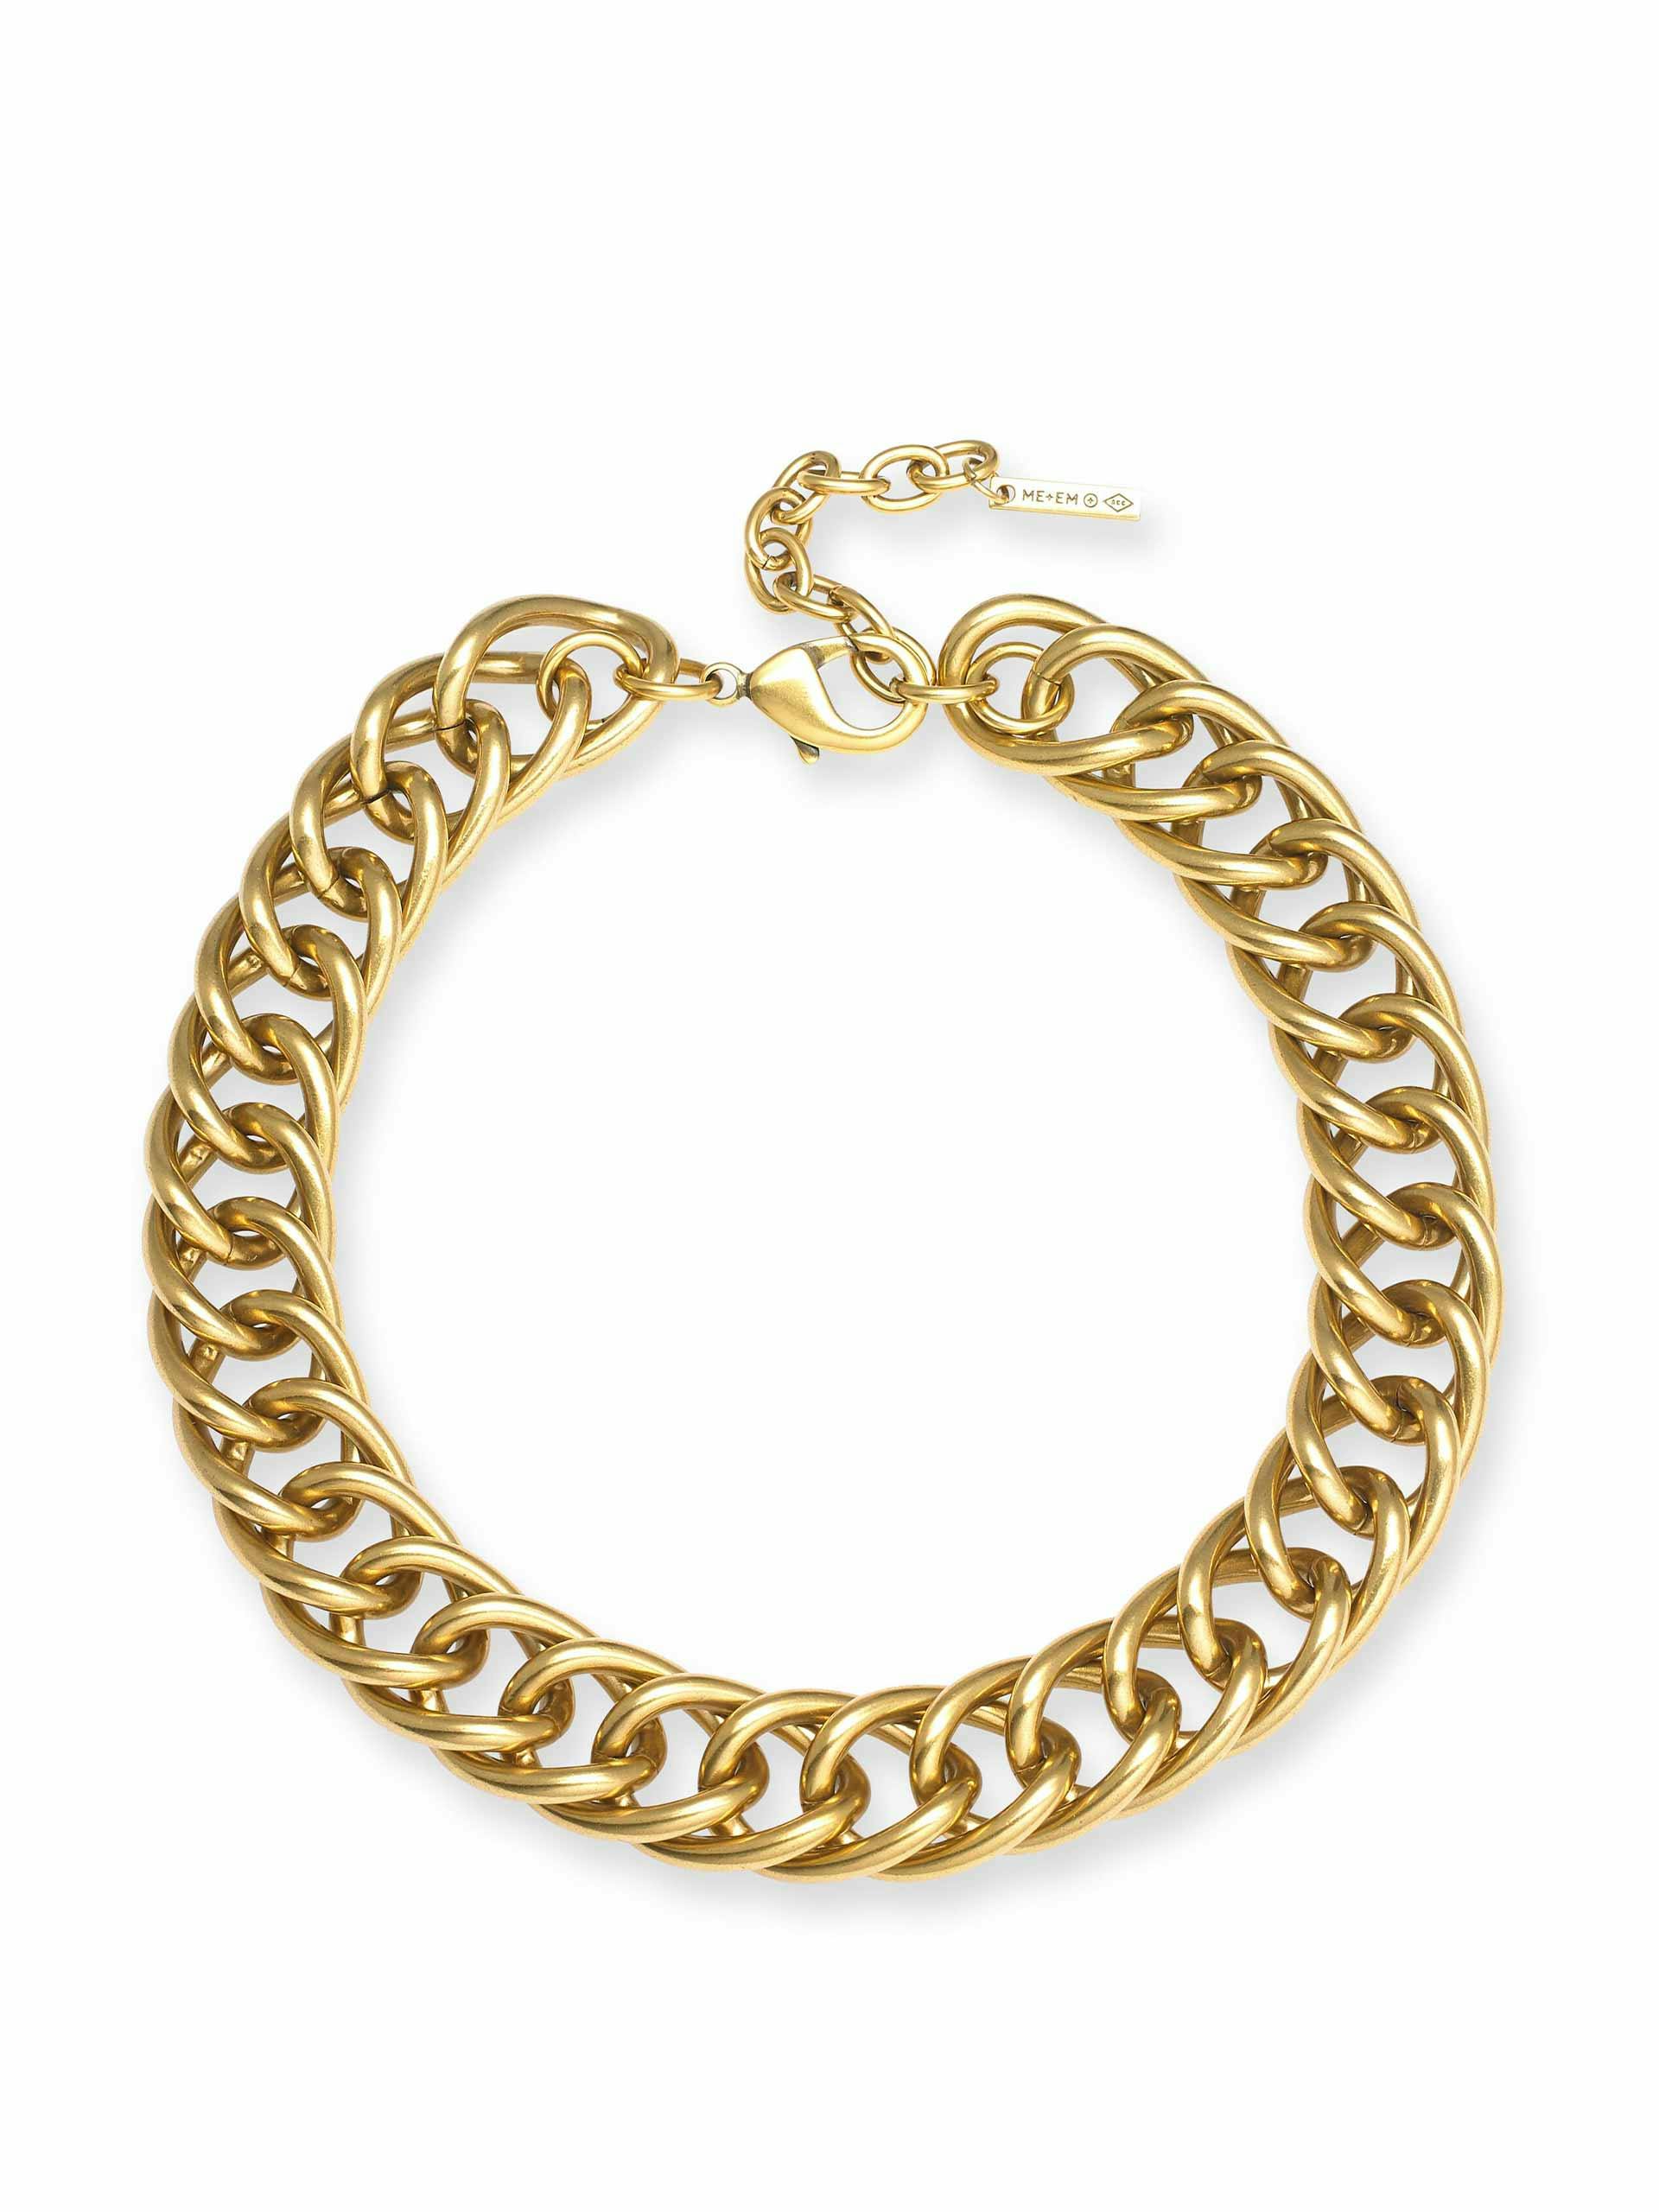 Gold 2-in-1 hallmark chain necklace